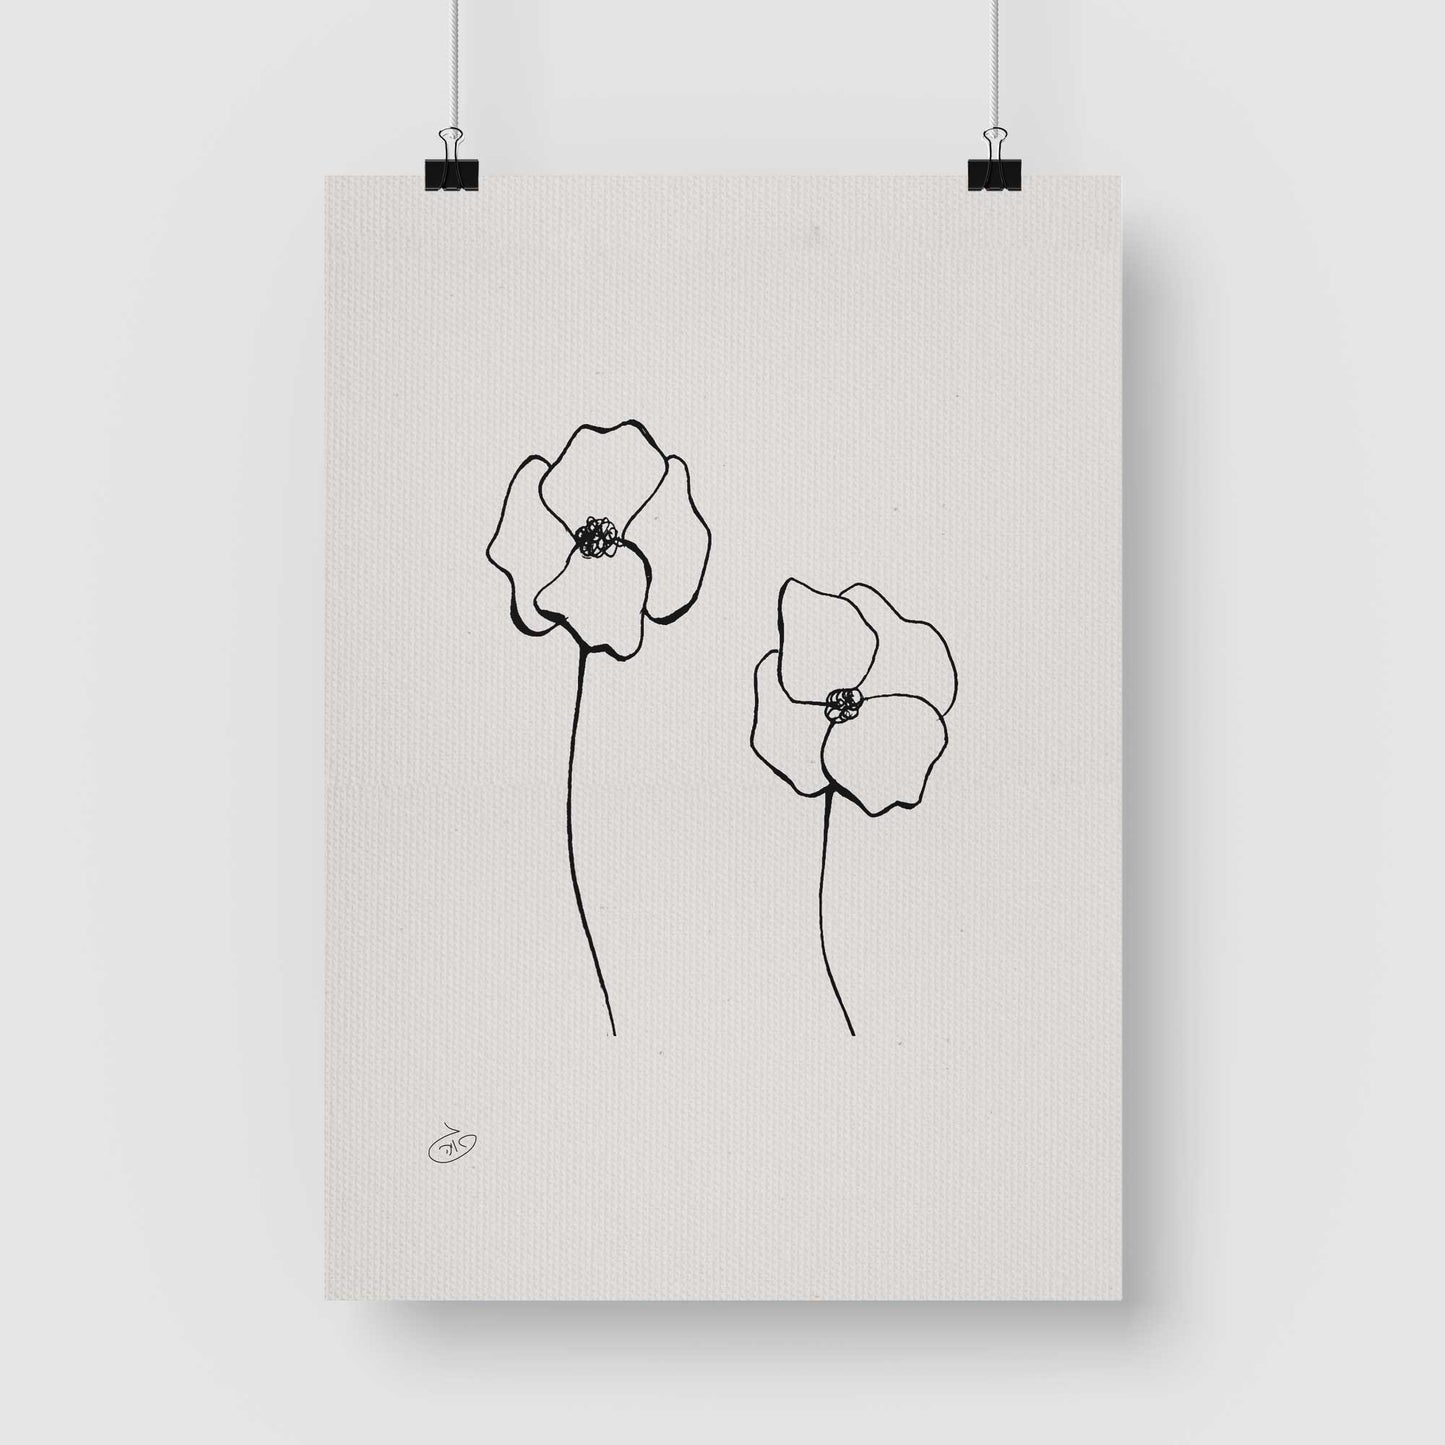 פוסטר One Line Flower - Poppy Poster ציור מקורי של גאיה המקדם את המודעות לאלימות בין בני זוג בכלל וכלפי נשים בפרט